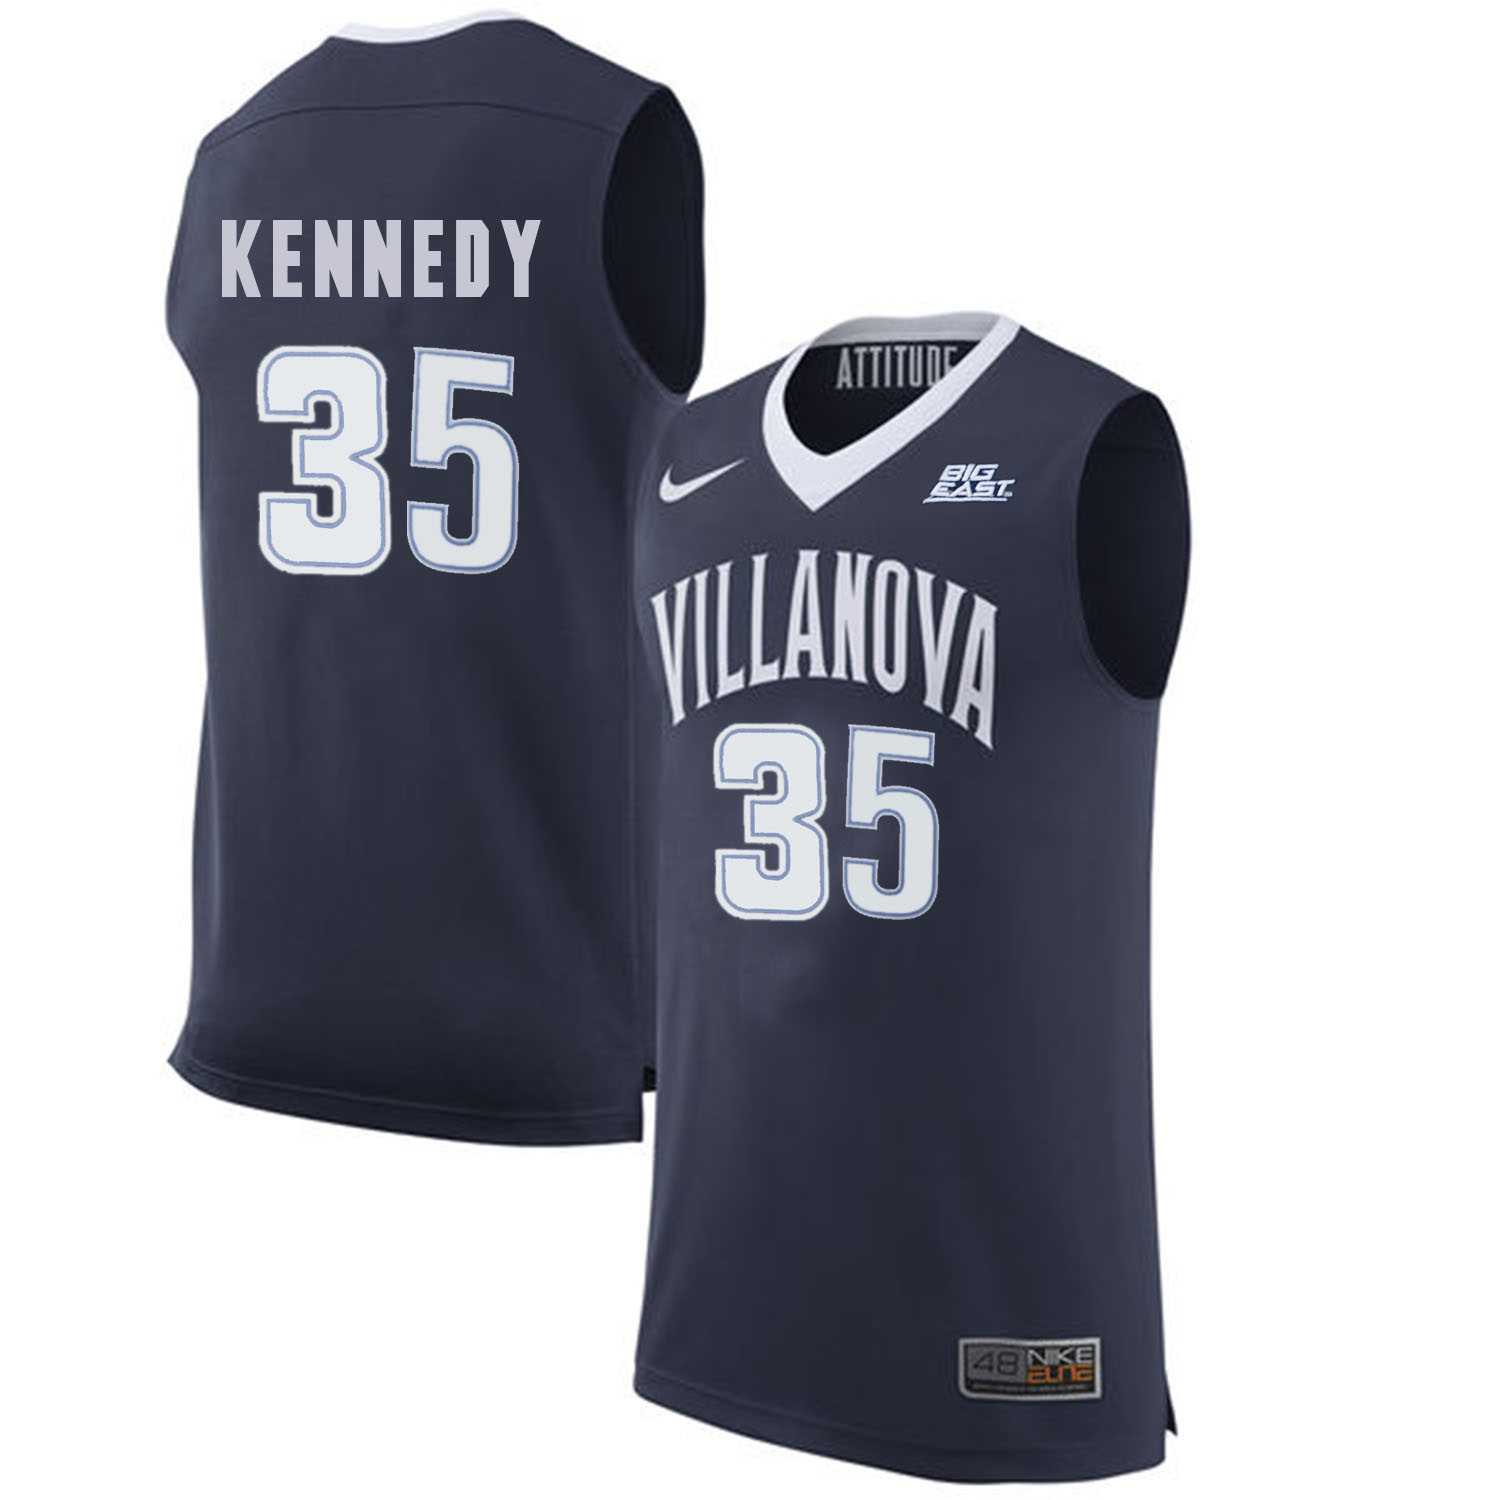 Villanova Wildcats 35 Matt Kennedy Navy College Basketball Elite Jersey Dzhi